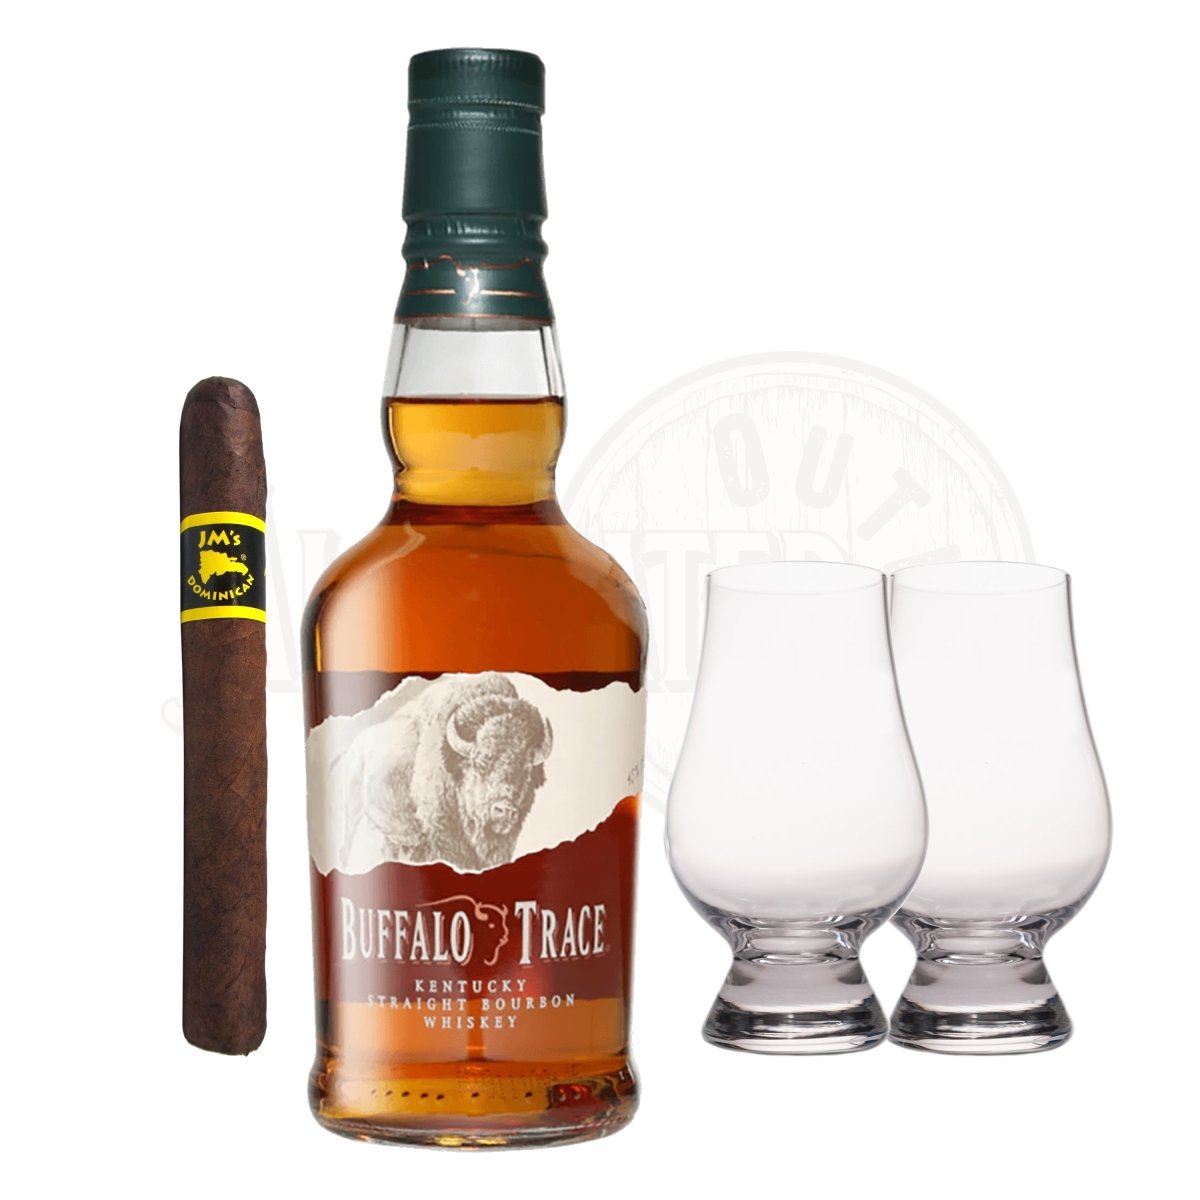 BUY] Buffalo Trace Kentucky Straight Bourbon Whiskey at